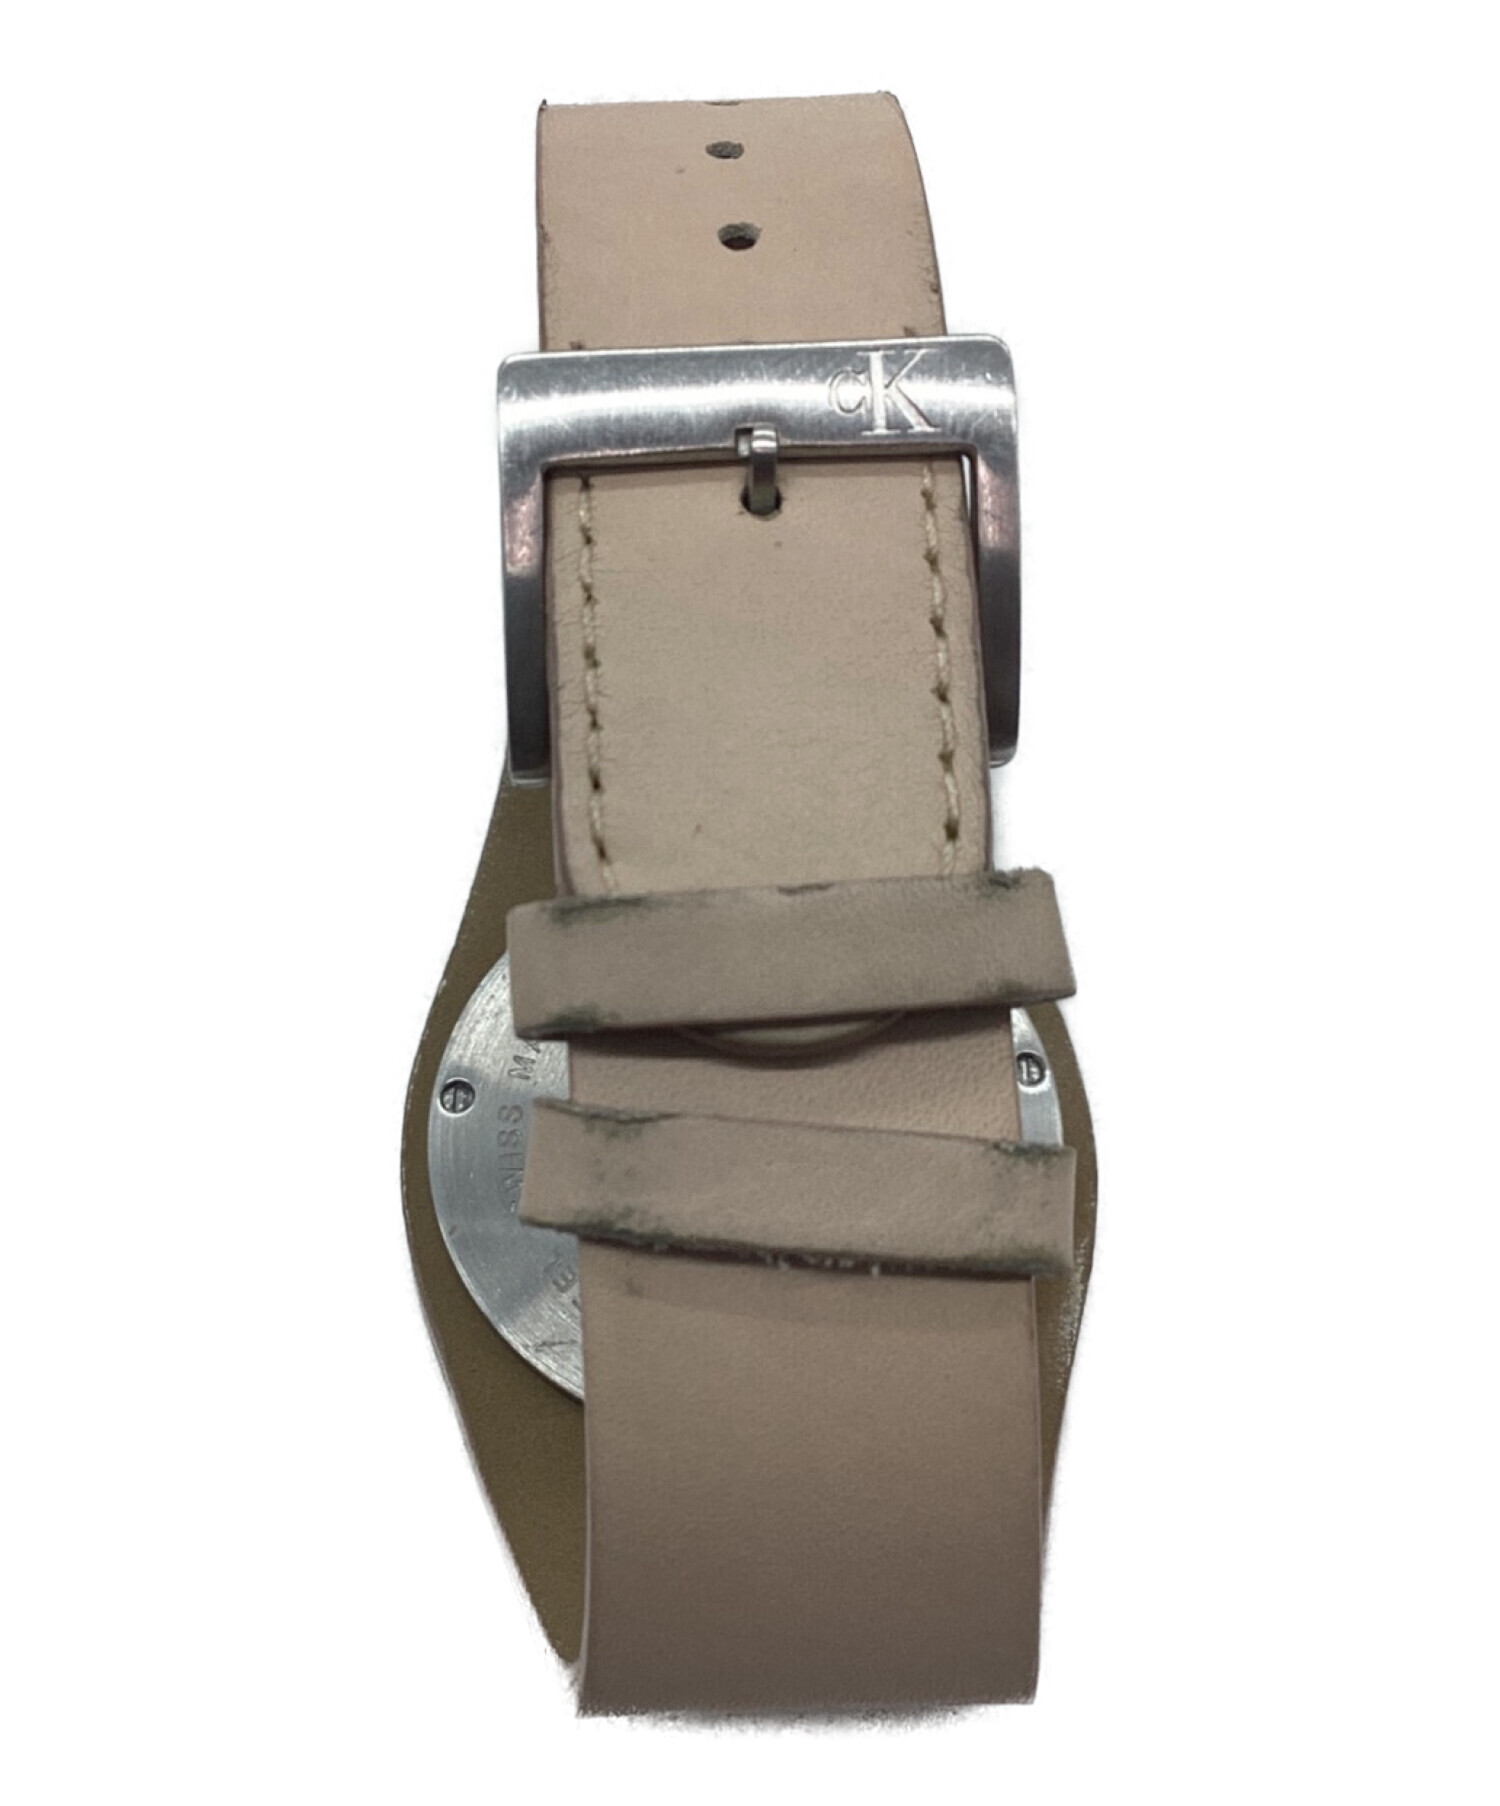 新品未使用 カルバンクライン Calvin Klein K2U296L6 腕時計贈り物